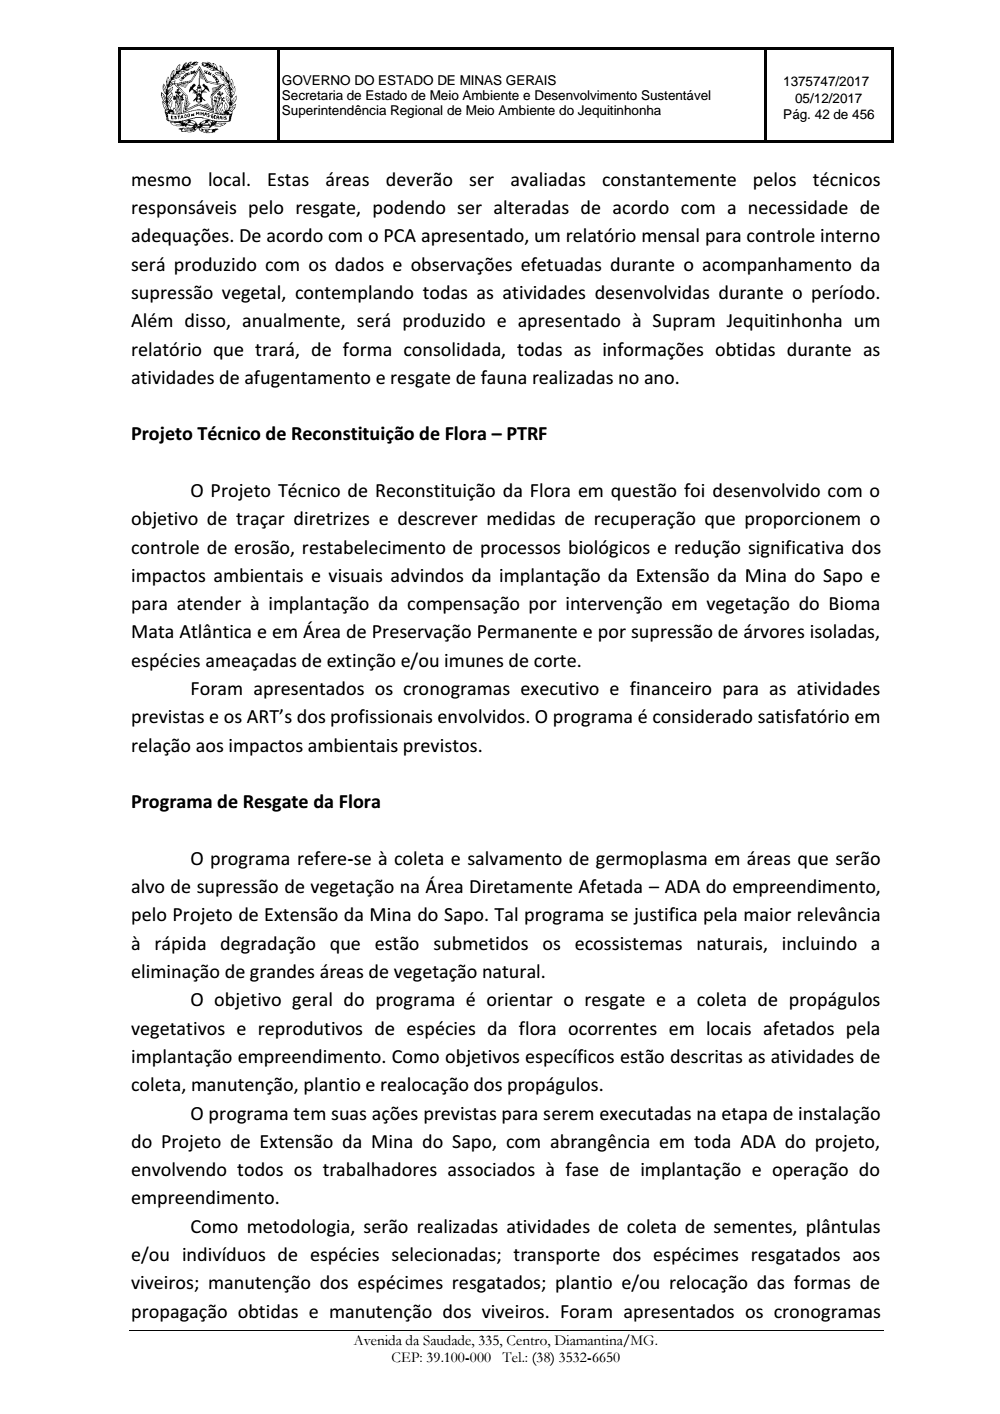 Page 42 from Parecer único da Secretaria de estado de Meio Ambiente e Desenvolvimento Sustentável (SEMAD)